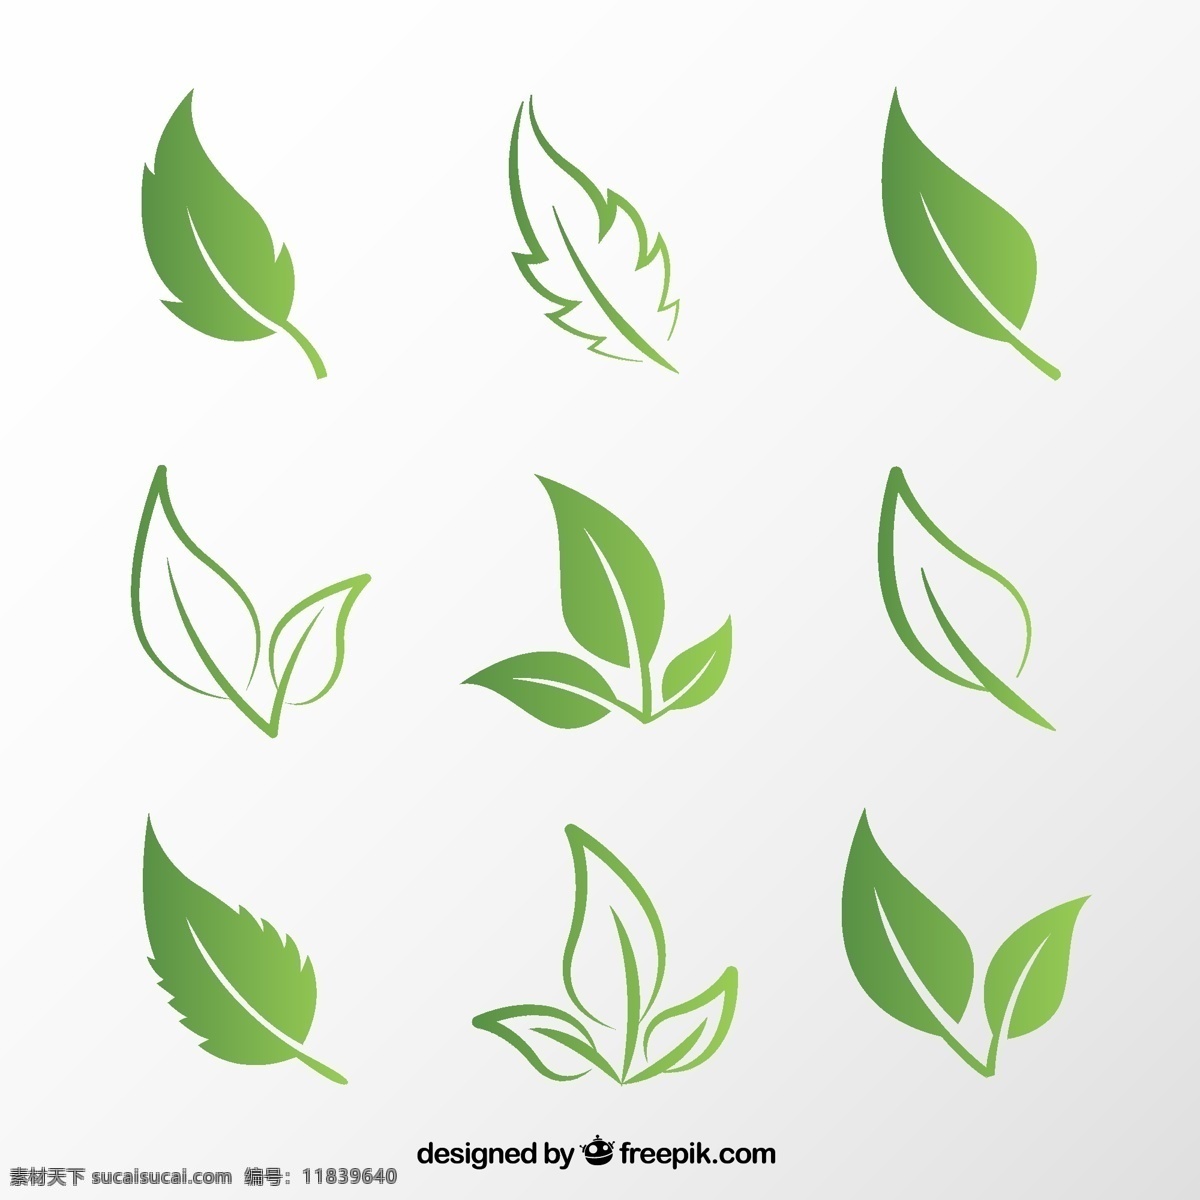 款 创意 绿叶 矢量 绿叶设计 矢量素材下载 植物 树叶 叶子 矢量图 ai格式 标志图标 其他图标